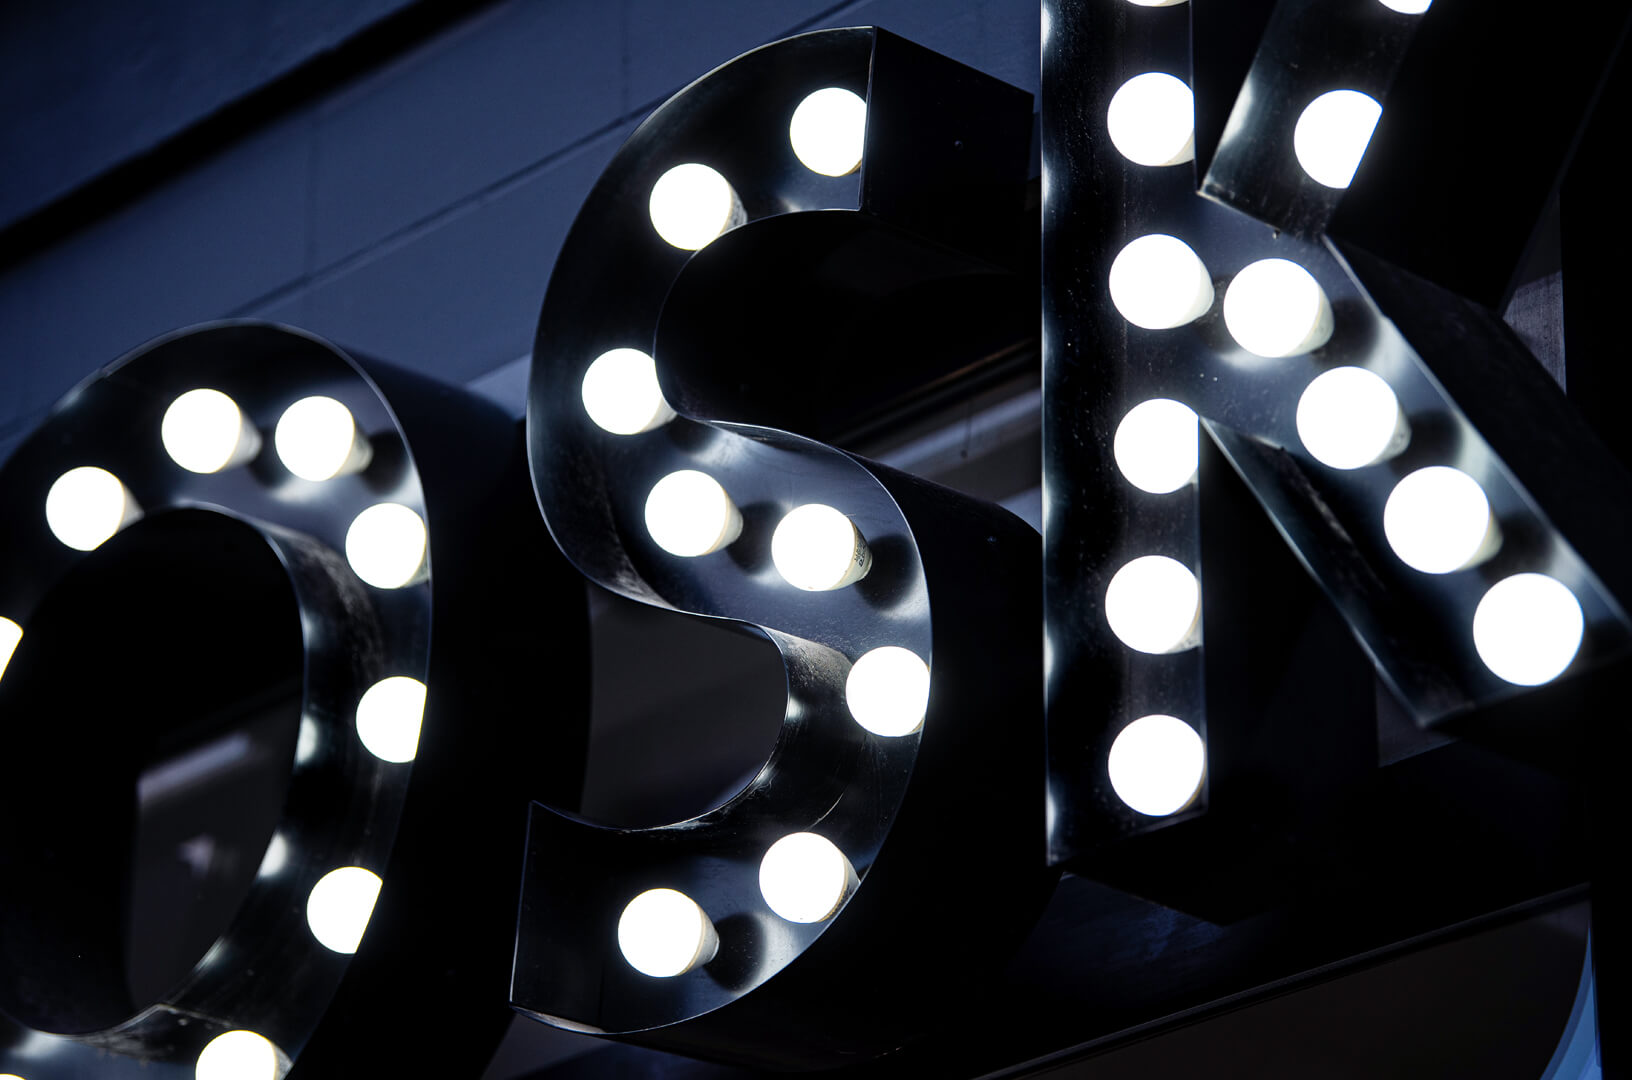 CERA - Letras con bombillas que forman la palabra WOSK, bombillas blancas incrustadas en letras negras